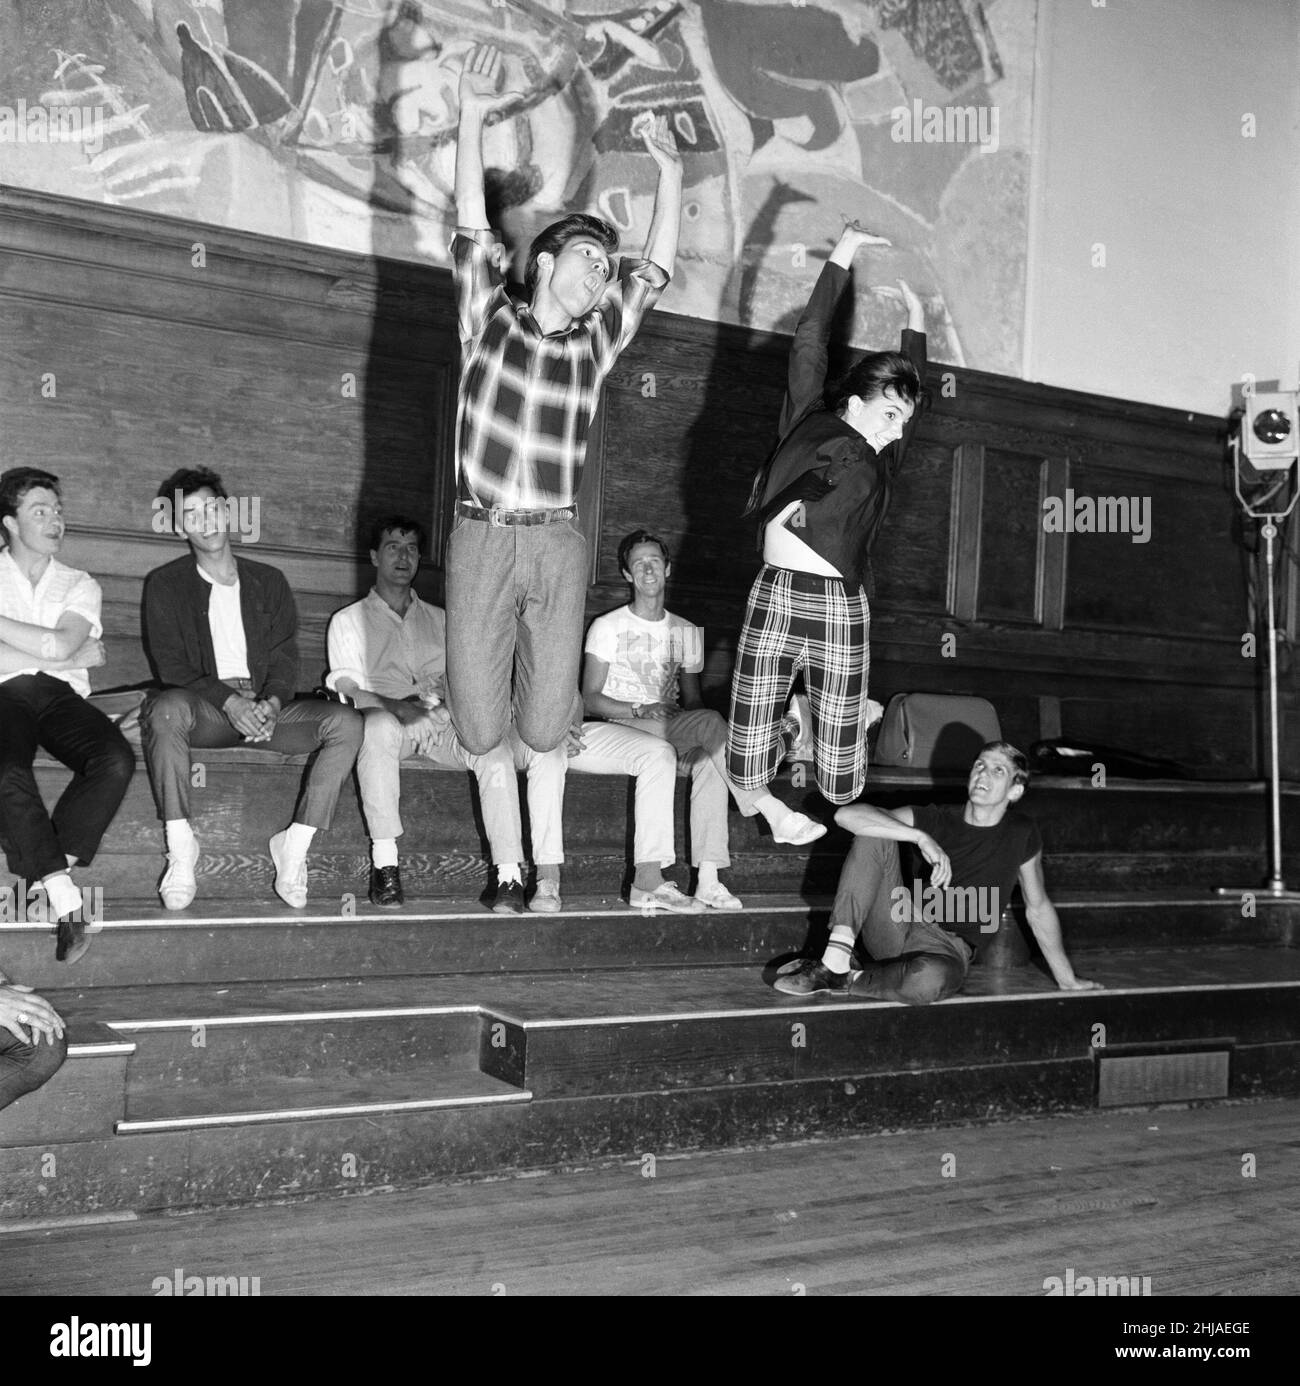 Liza Minnelli, die 17-jährige Tochter von Judy Garland, ist in London, um an einem ATV-Spektakel mit Cliff Richard und den Schatten teilzunehmen, wo sie als besondere Gastkünstlerin singt und tanzt. Abgebildet sind Liza Minnelli und Cliff Richard und andere Proben. 17th. Juni 1964. Stockfoto